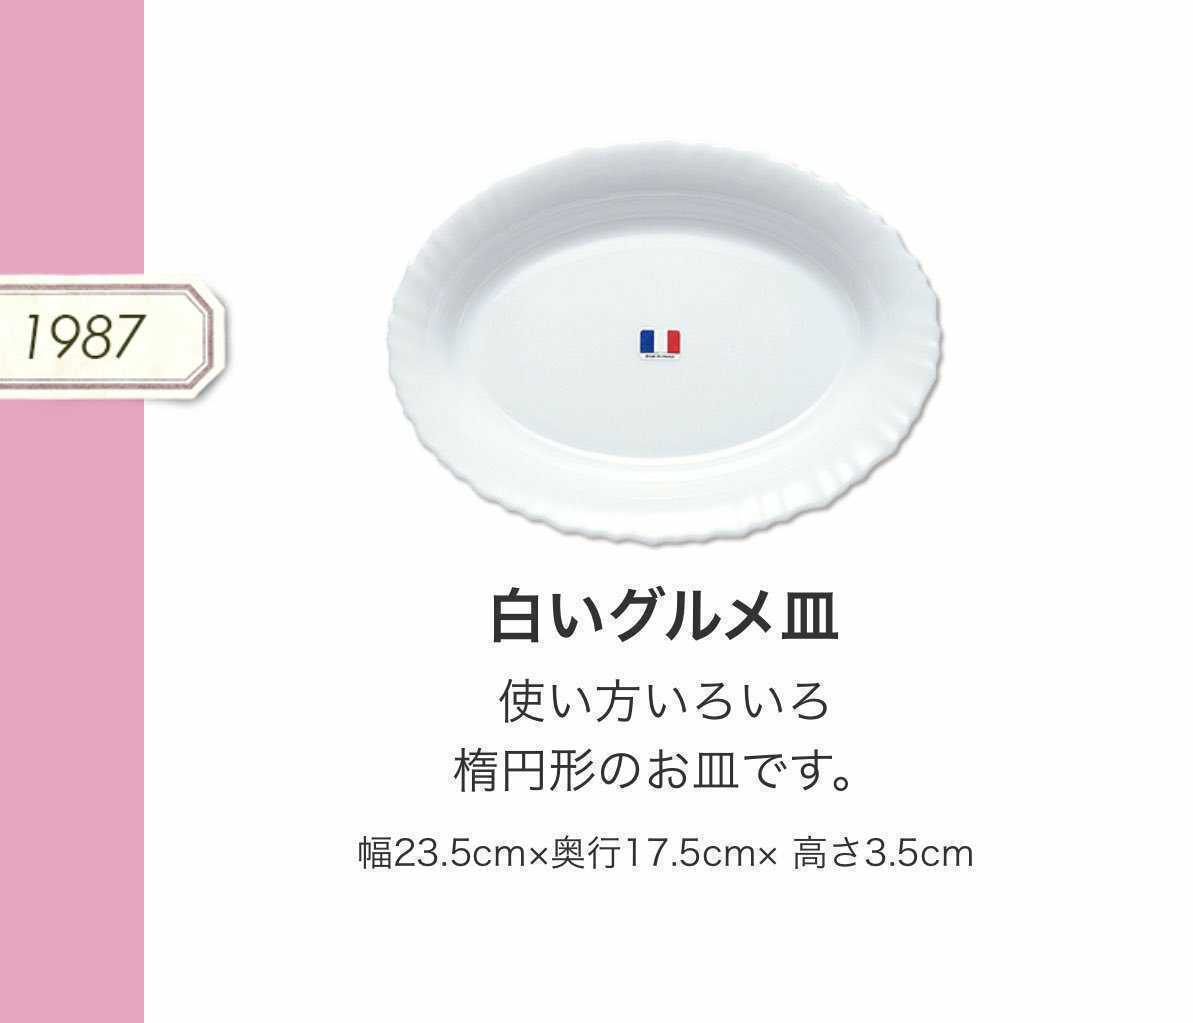 【送料無料】ヤマザキ春のパン祭り山崎春のパンまつり1987年白いグルメ皿6枚セット 白い皿 グラタン皿 カレー皿 パスタ皿 アルコパルの画像5